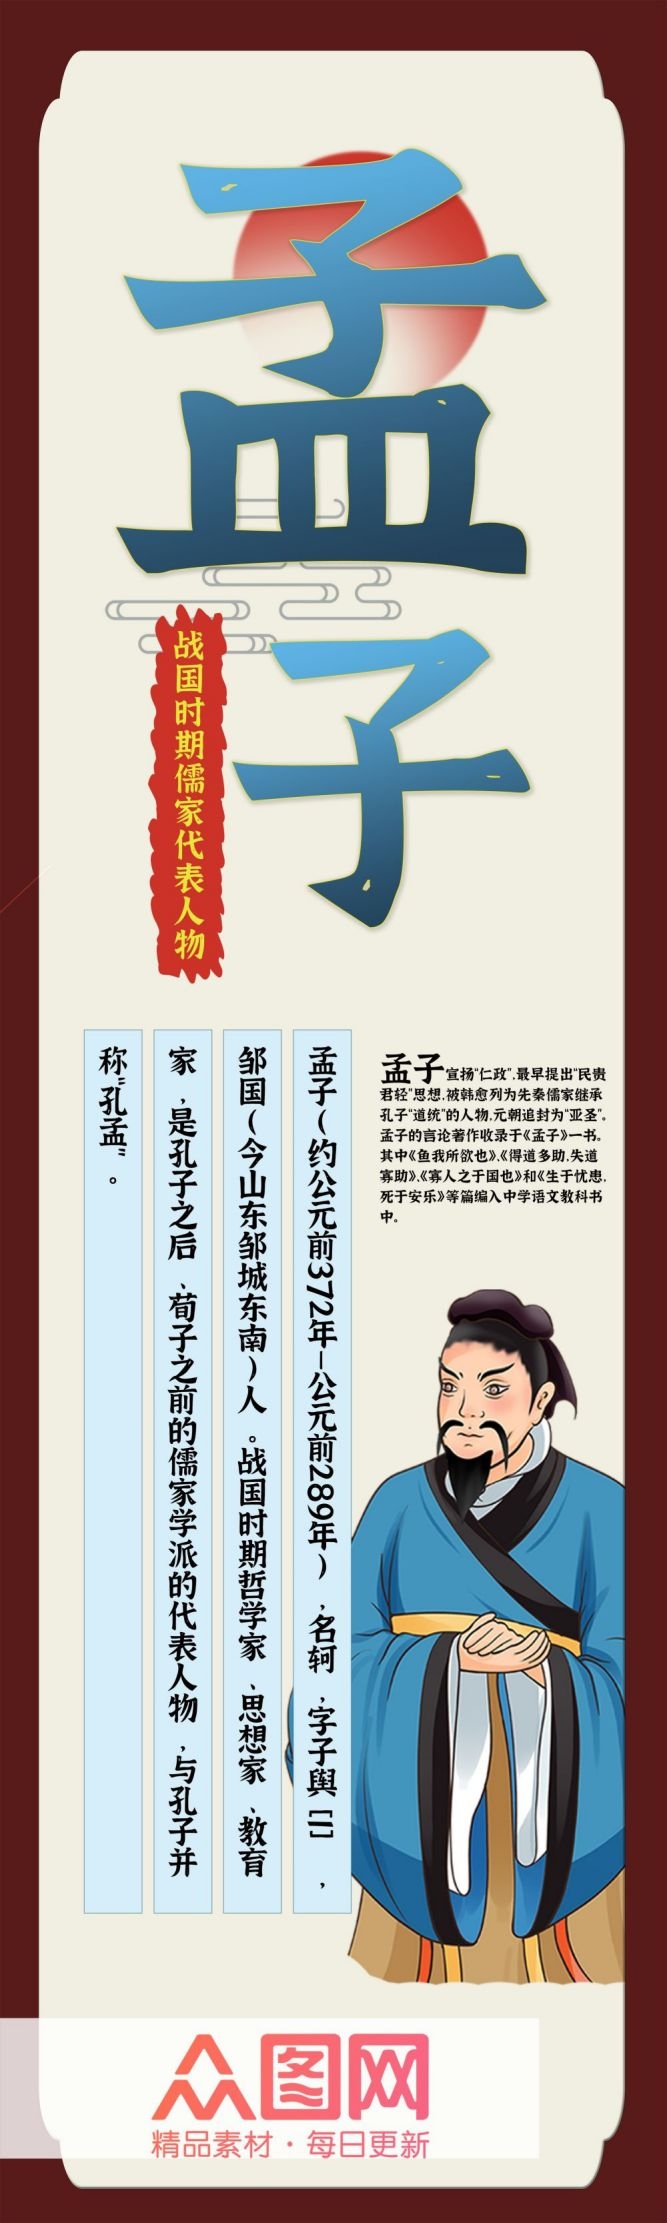 学校校园文化中国风复古名人名言挂画海报 (89)